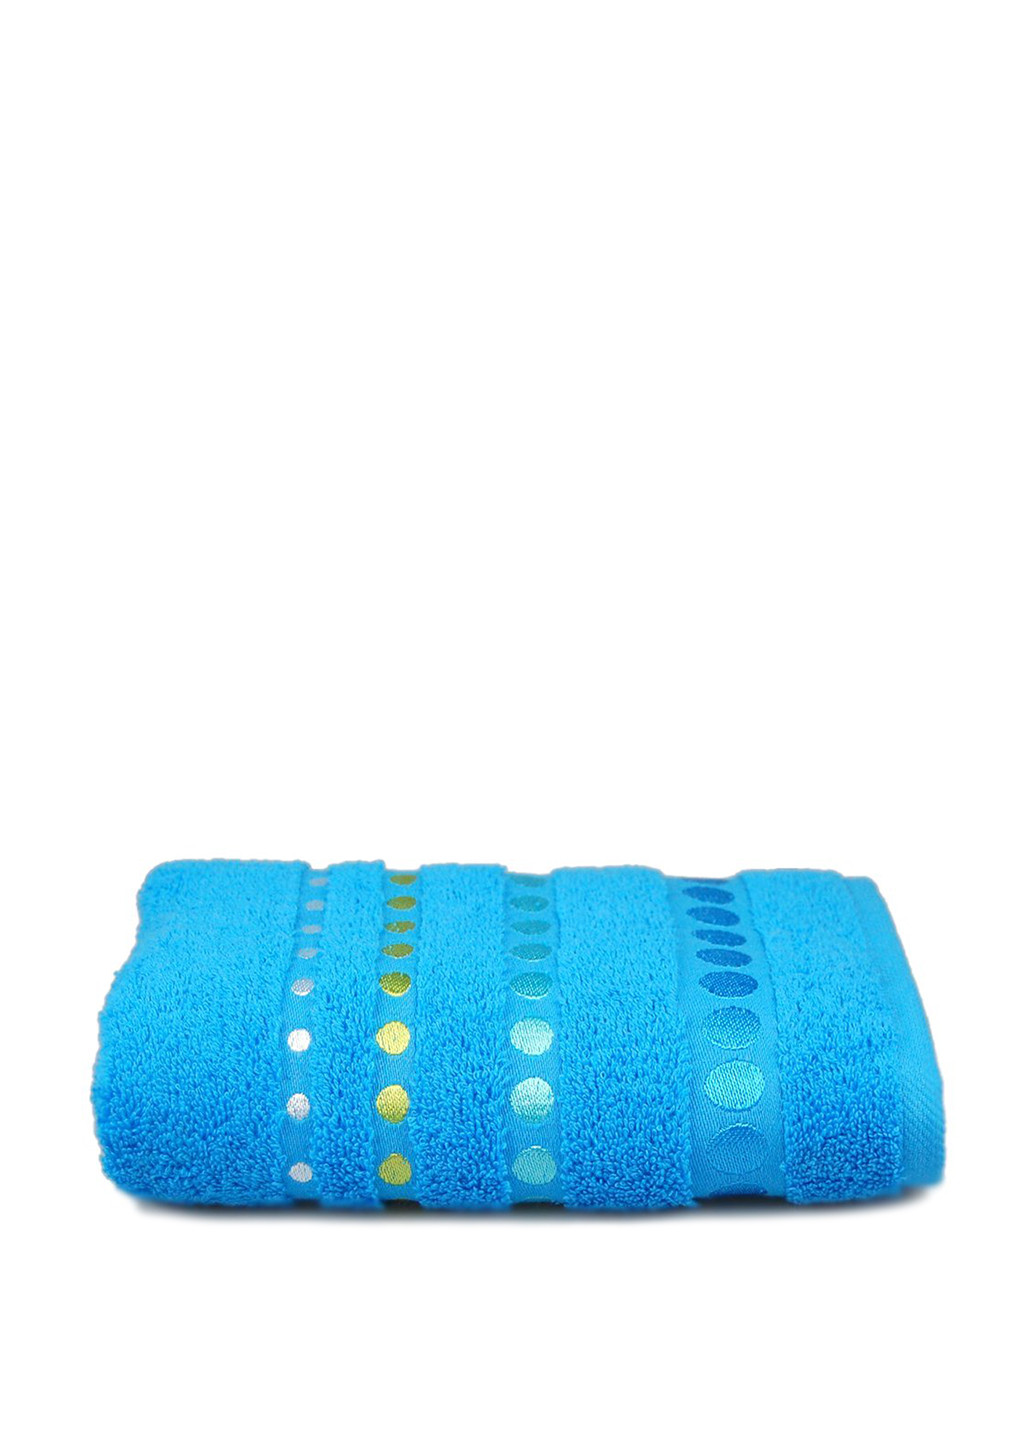 Home Line полотенце, 50х90 см синий производство - Турция